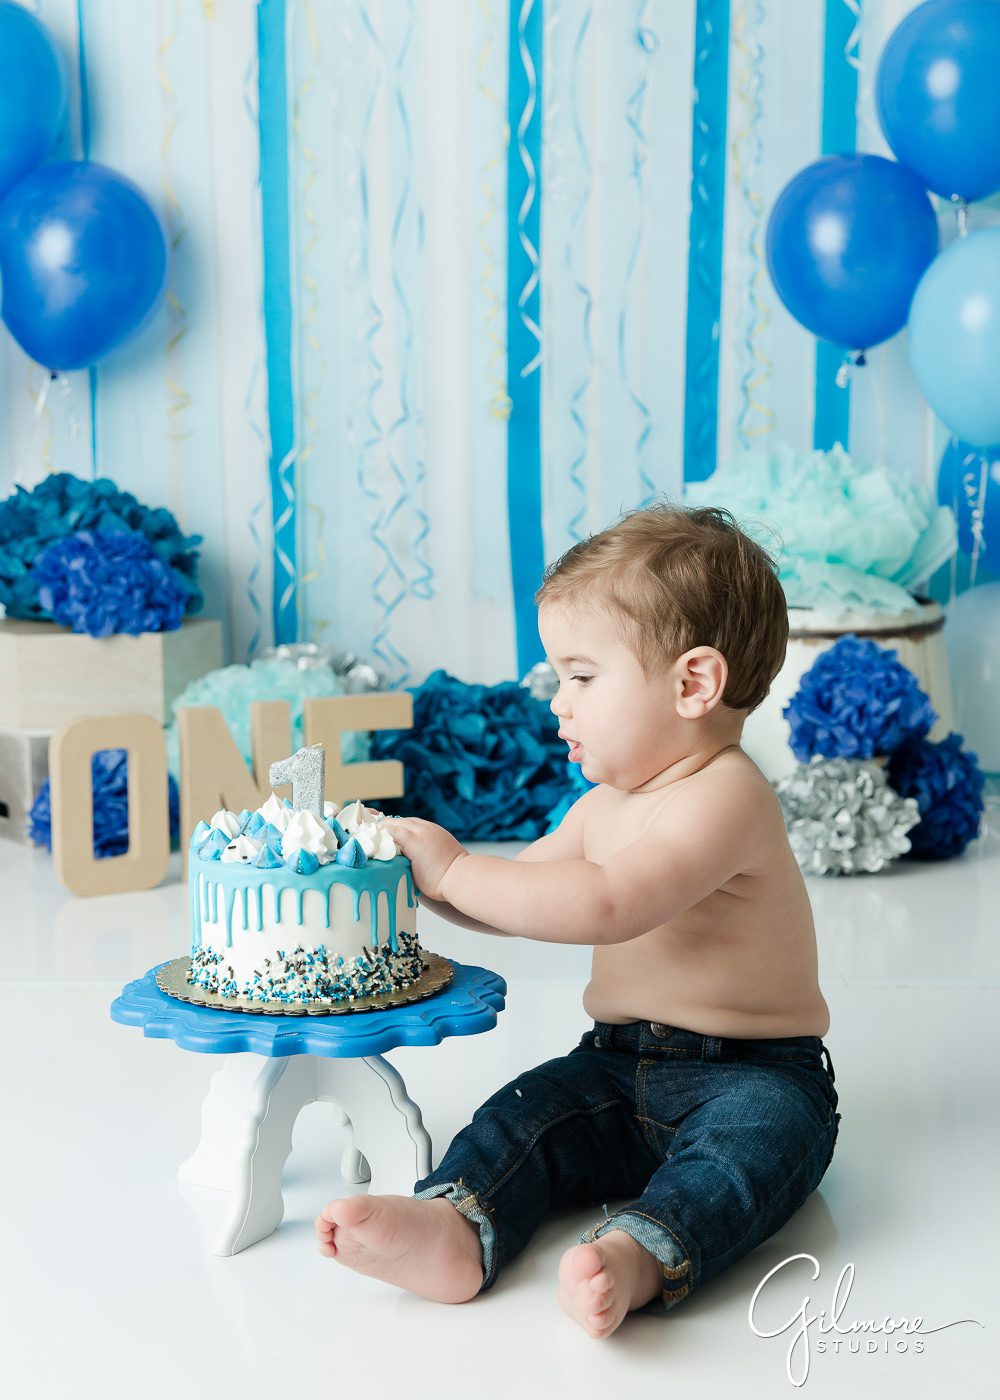 Cake Smash photography for boys, smashing cake, eating, frosting, icing, baby boys